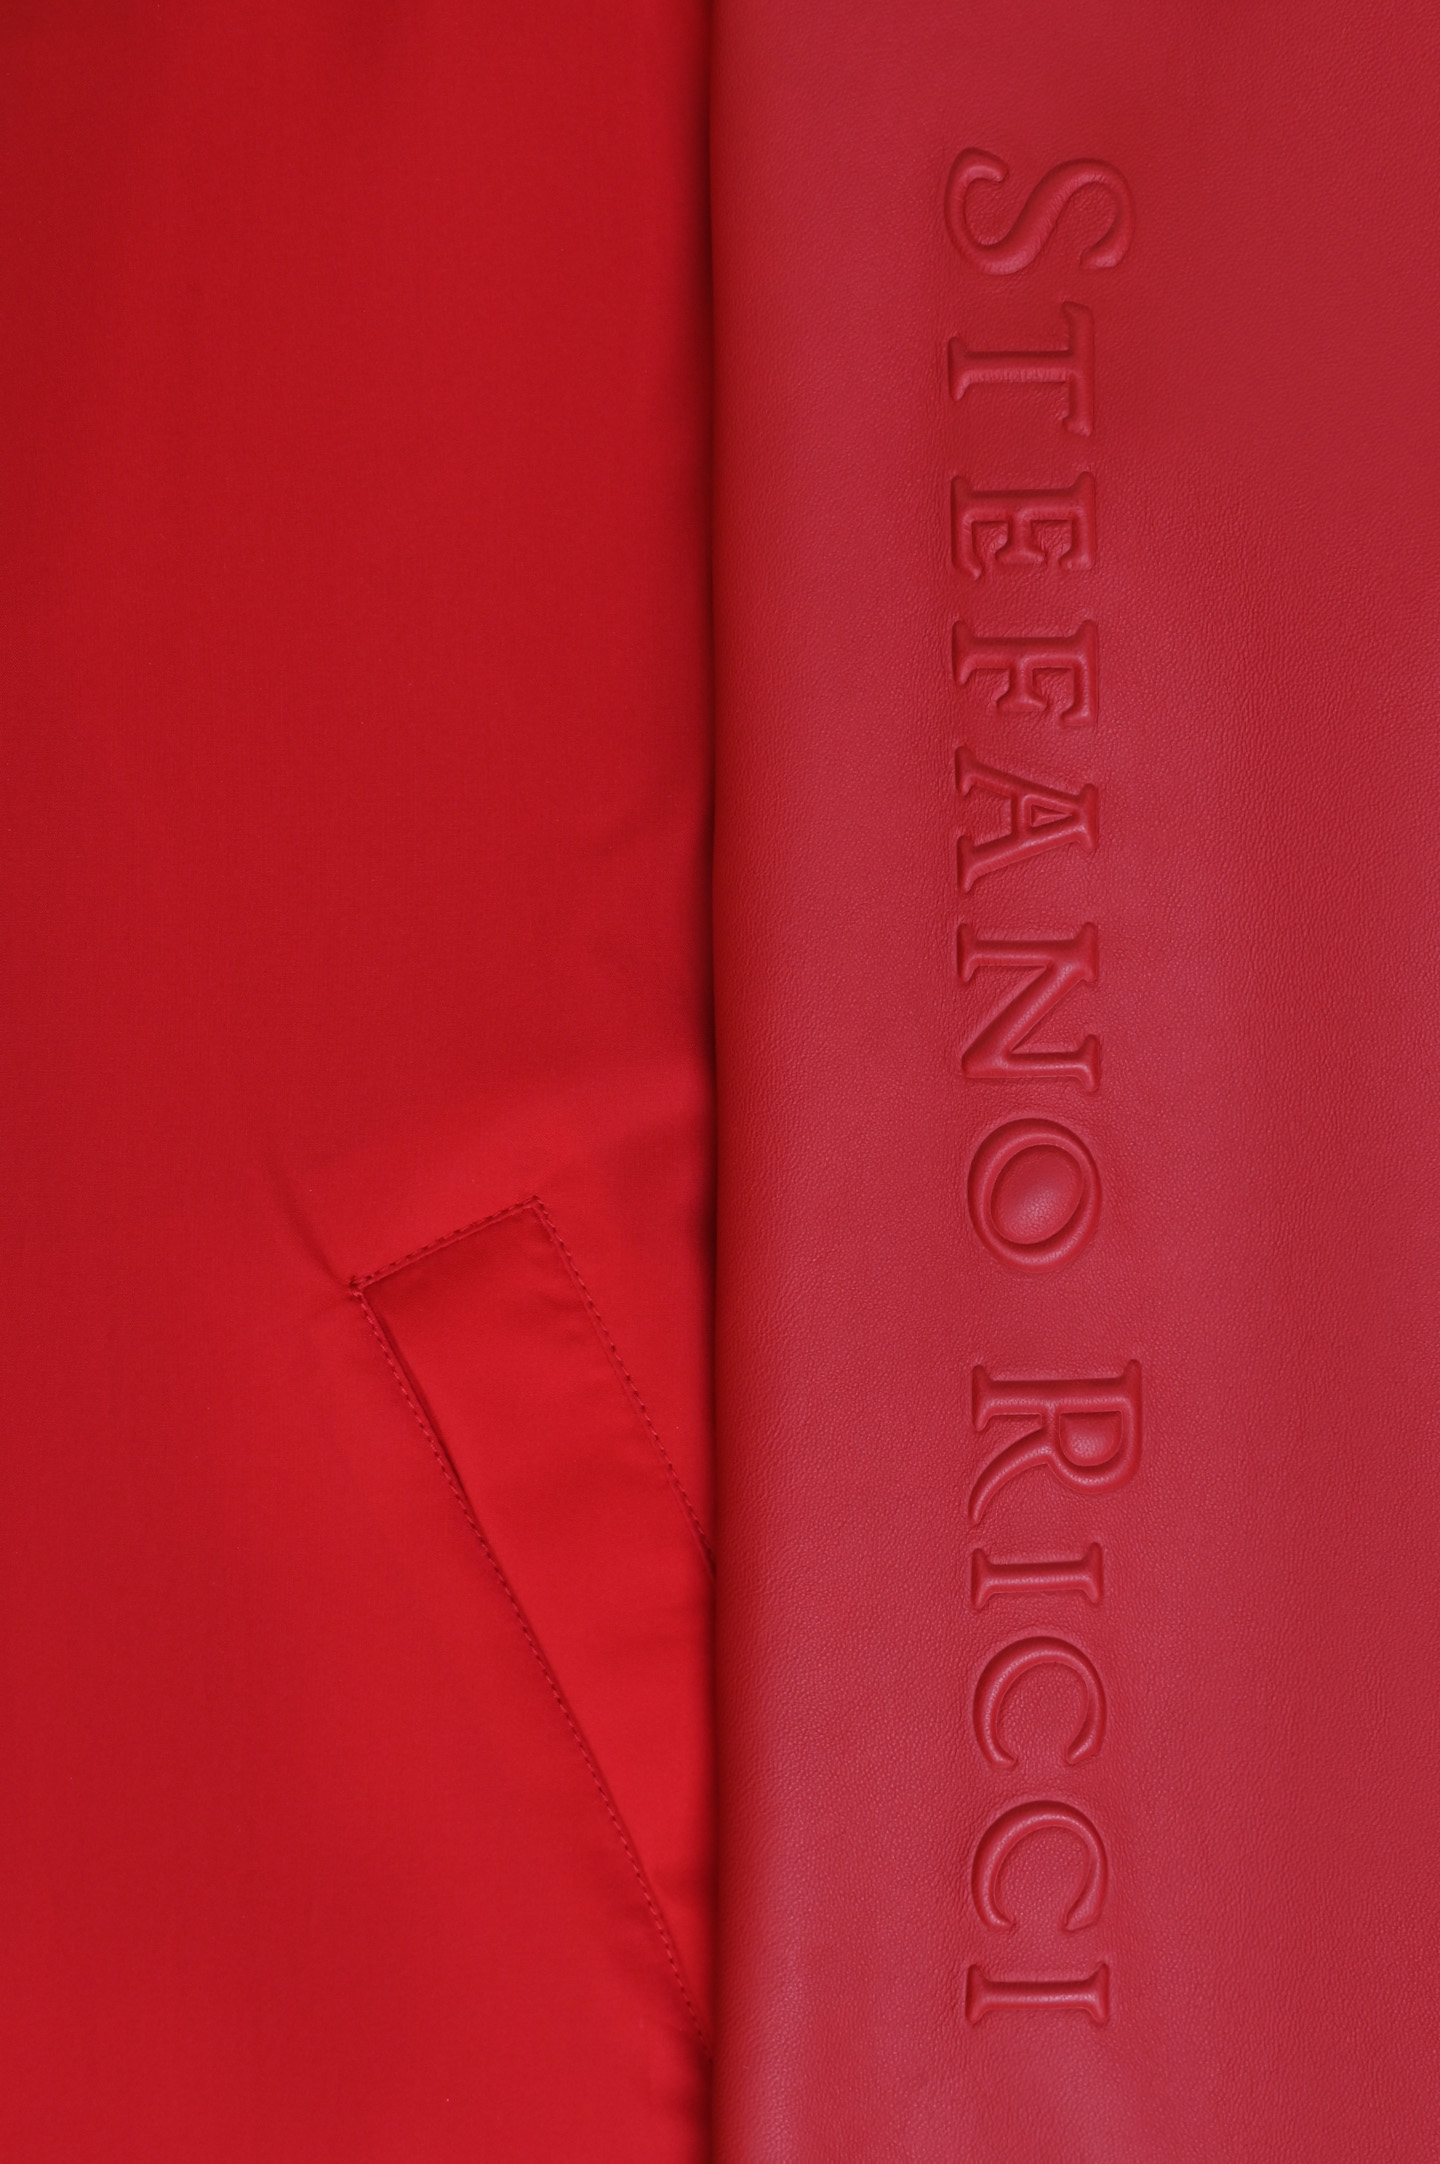 Куртка STEFANO RICCI M7J0100090 NPPON, цвет: Красный, Мужской